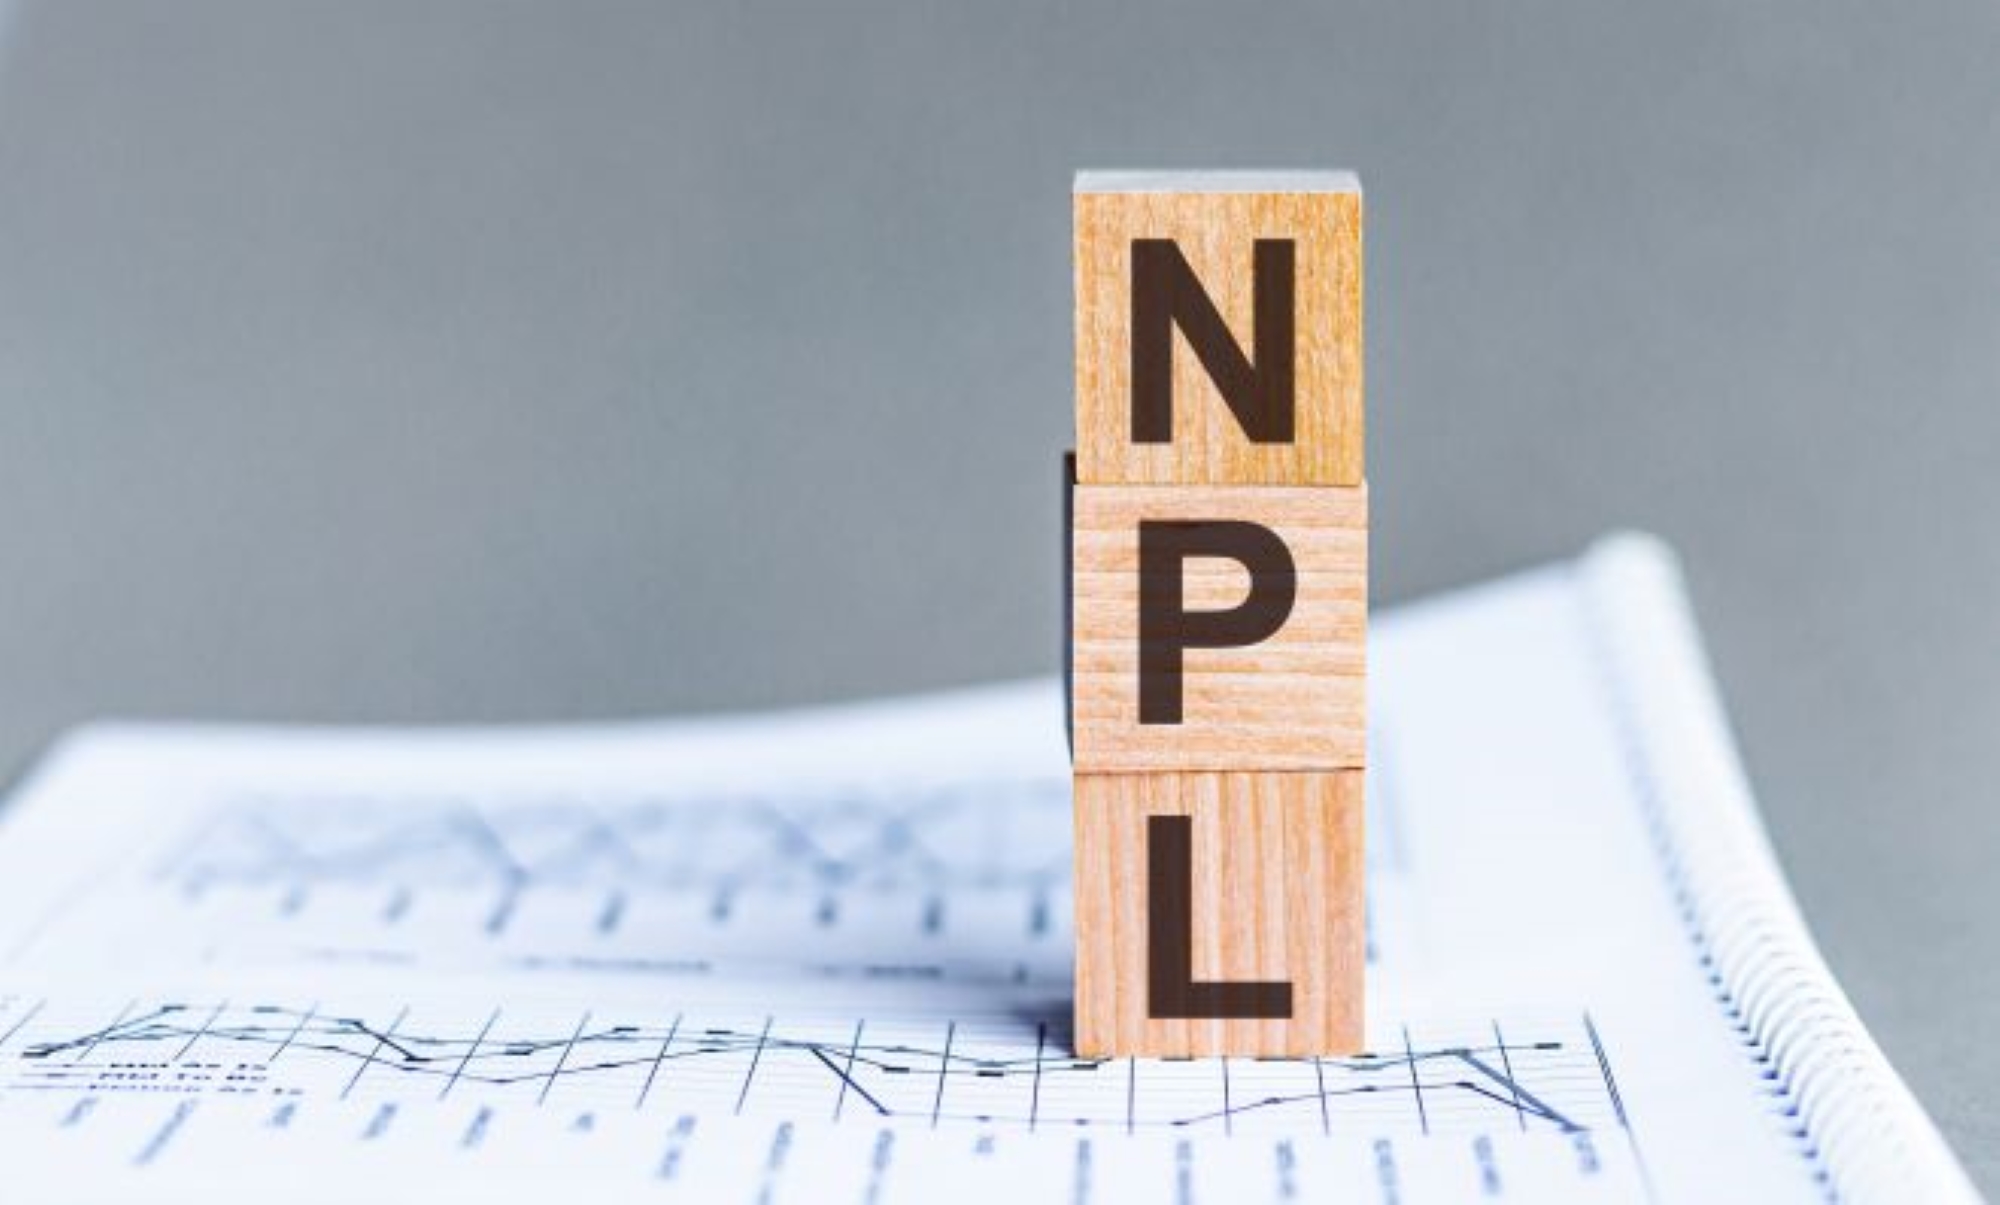 Al momento stai visualizzando NPL immobiliari, cosa sono?